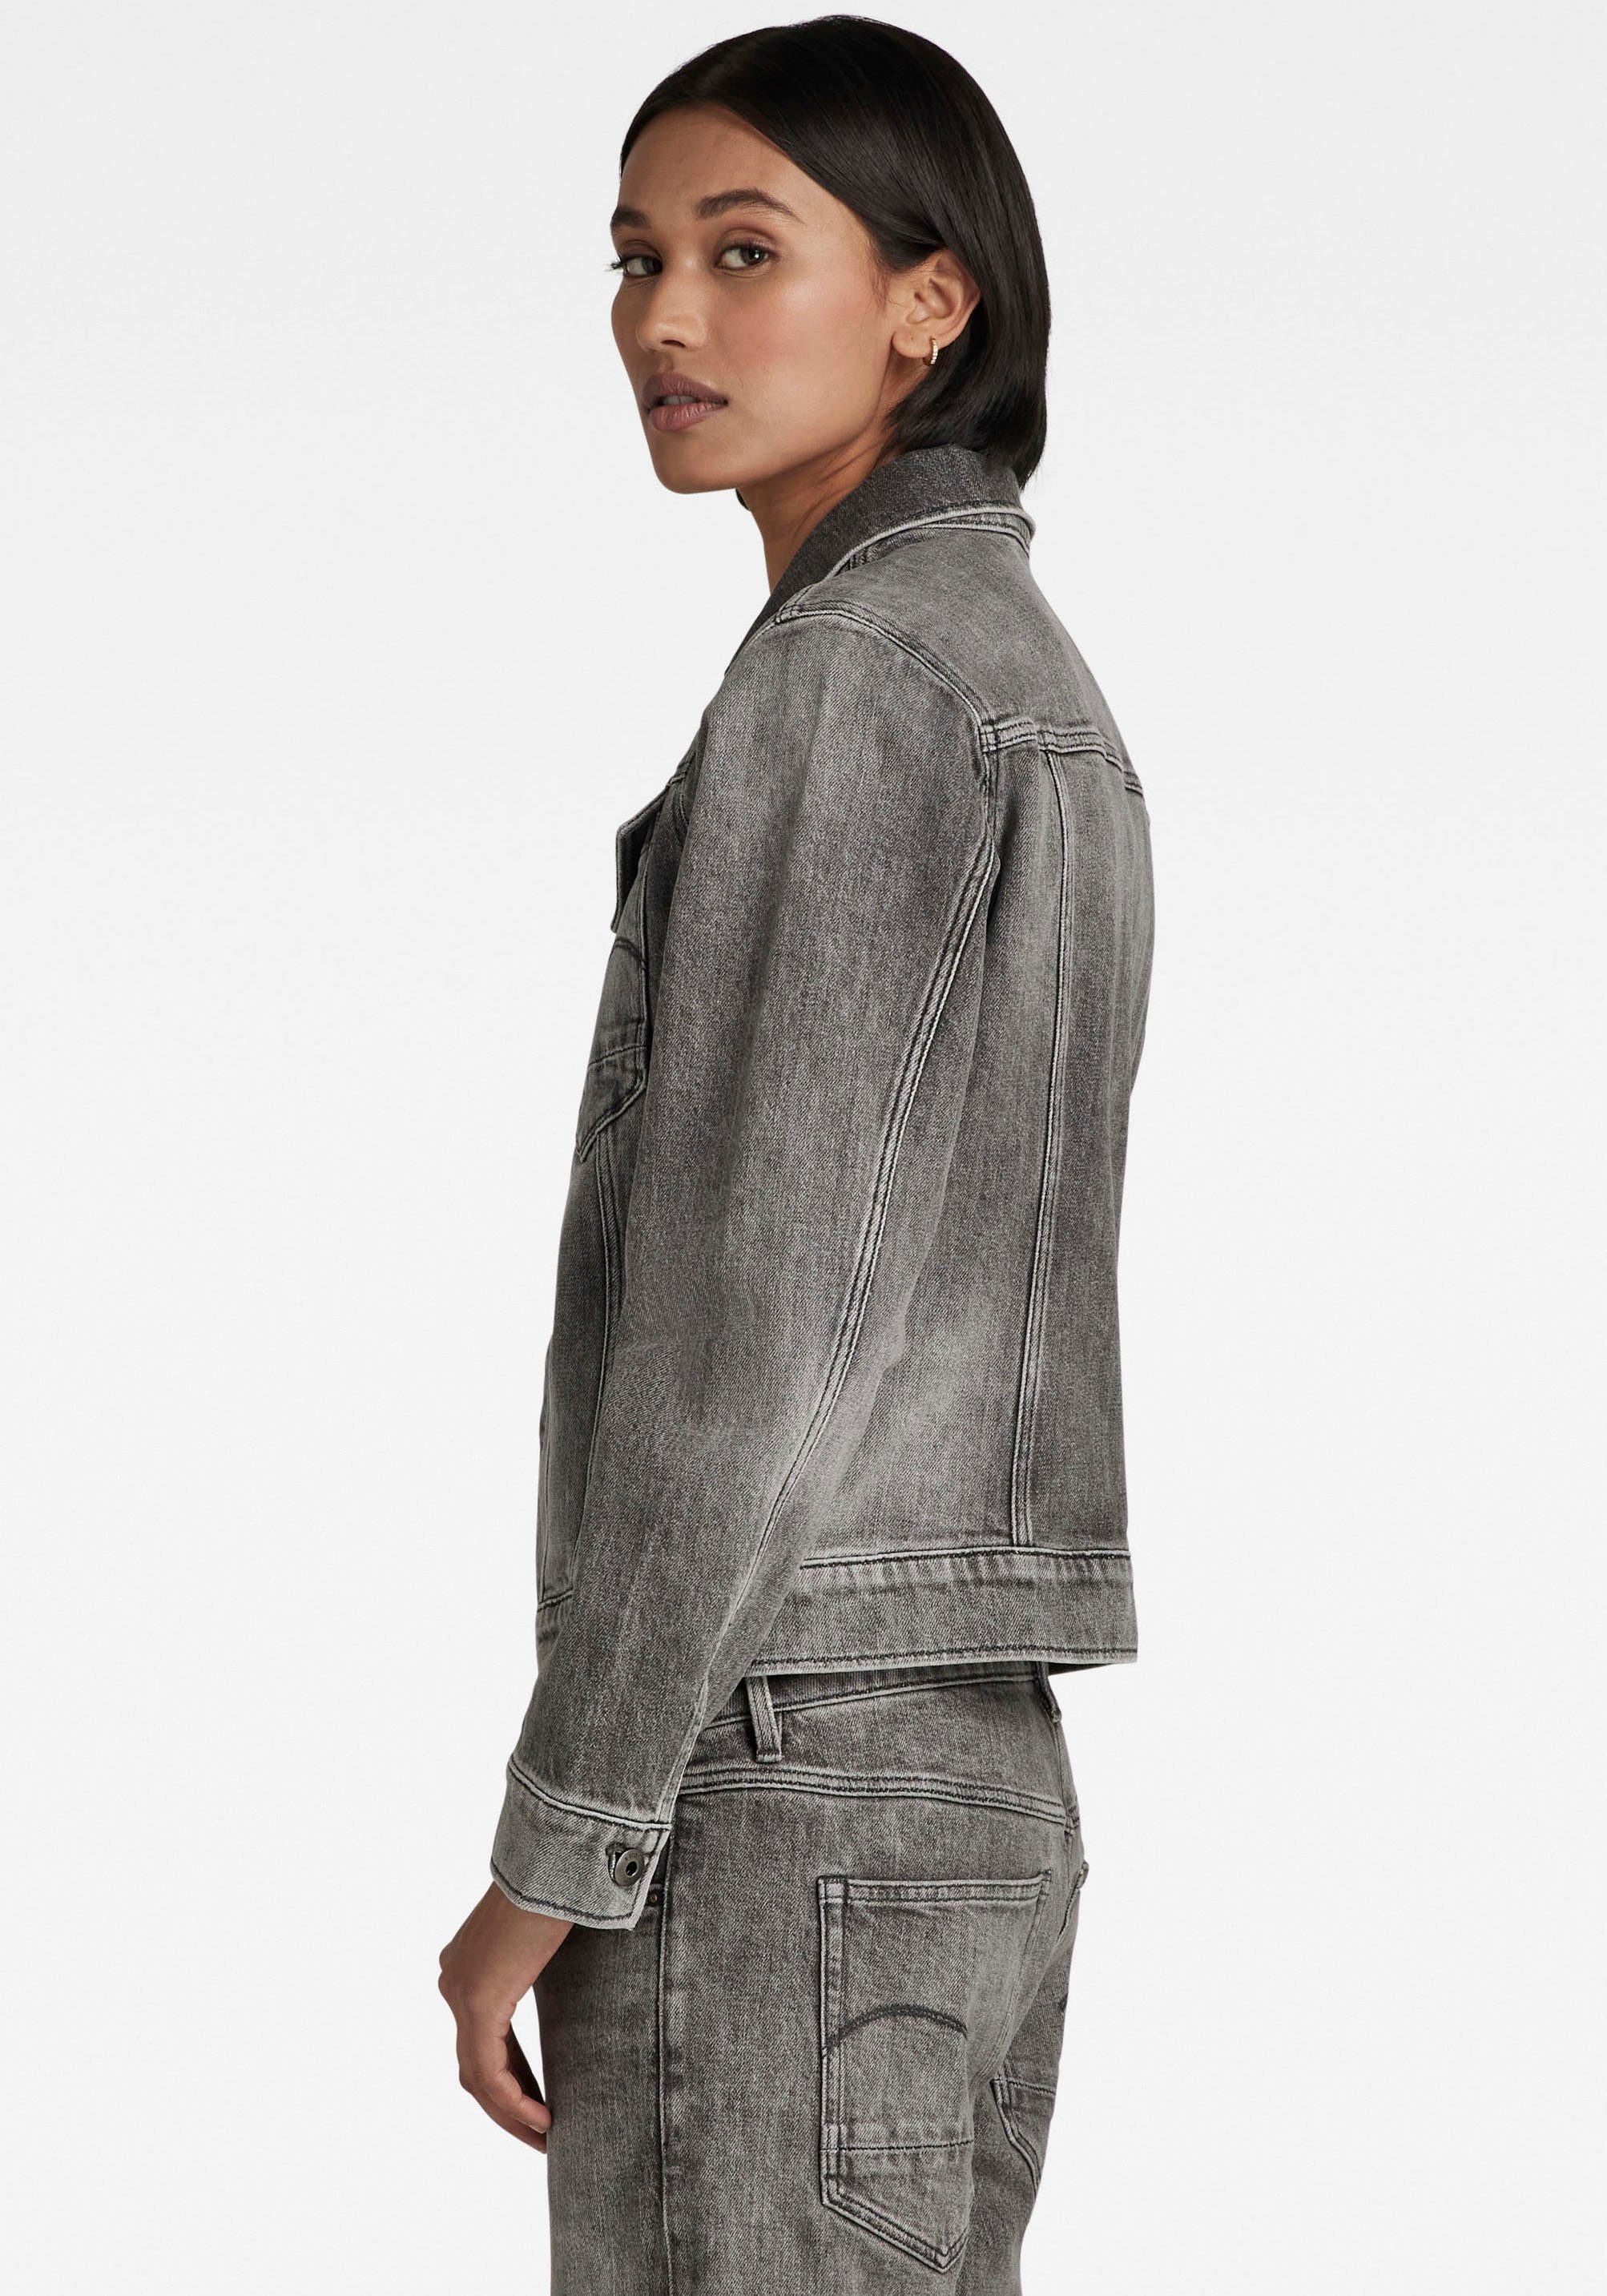 Jeansjacke aufgesetzten Ösenknöpfen mit jacket RAW faded mit Pattentaschen G-Star carbon Arc 3D